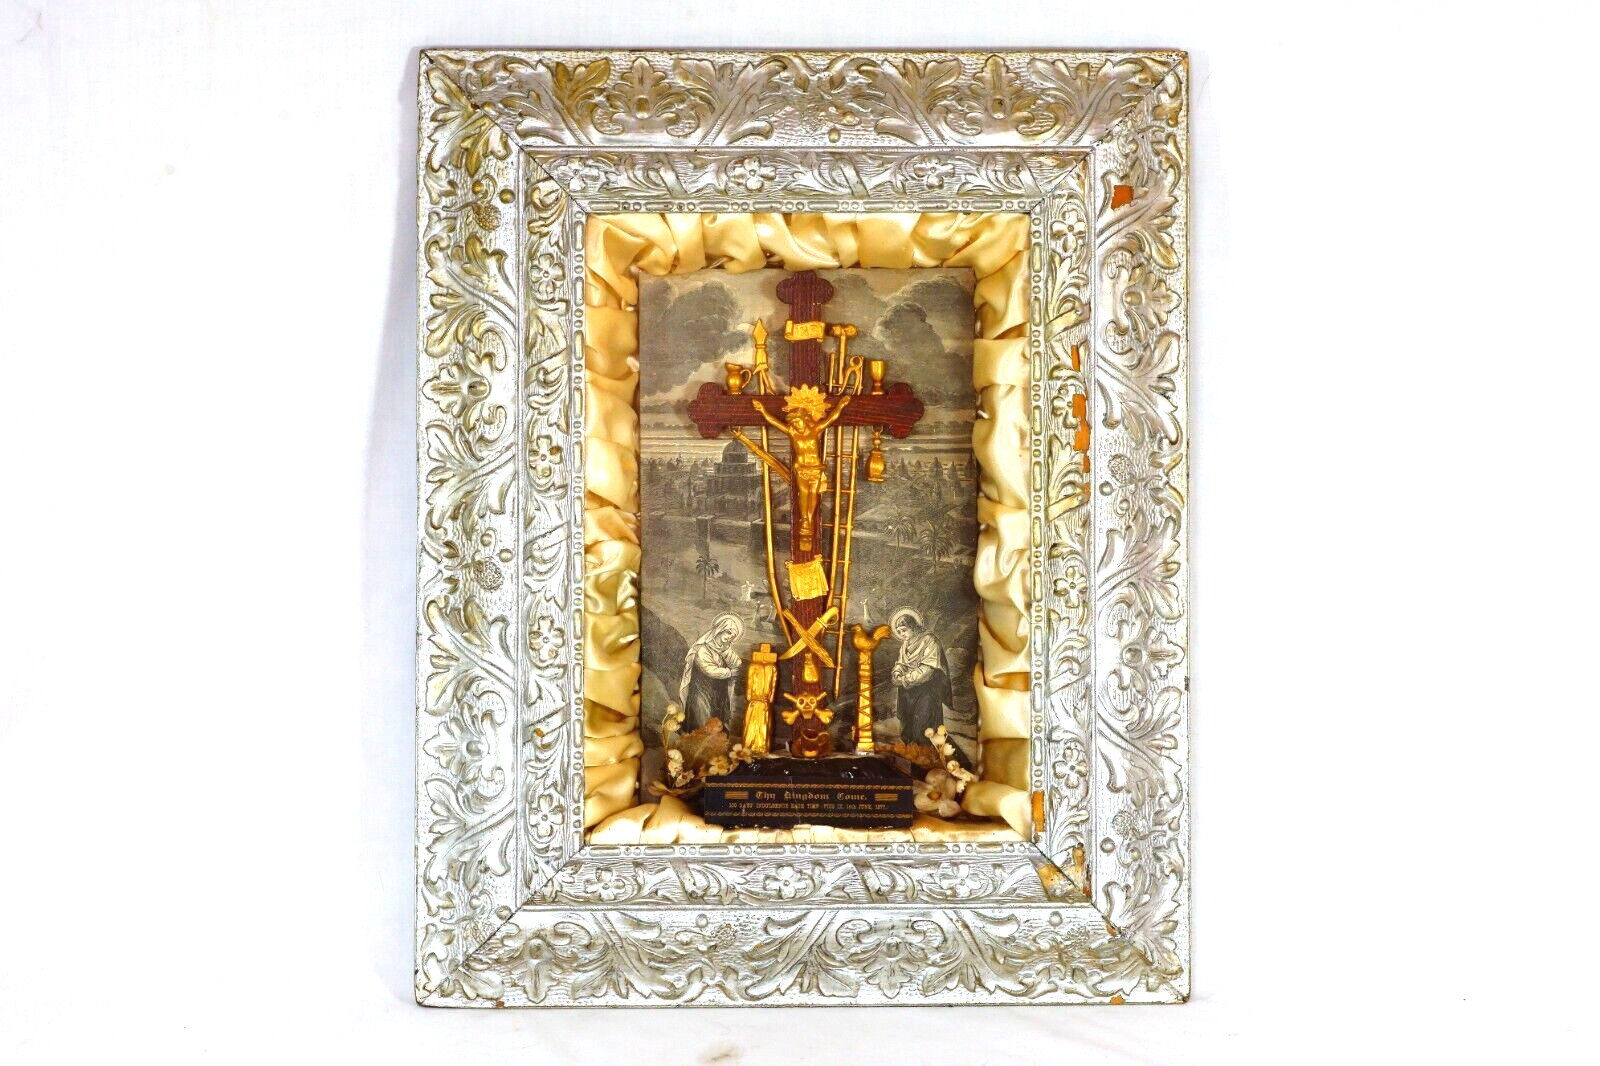 Antique Religious Shadow Box Diorama Passion Crucifix Skull Crossbones Pius IX